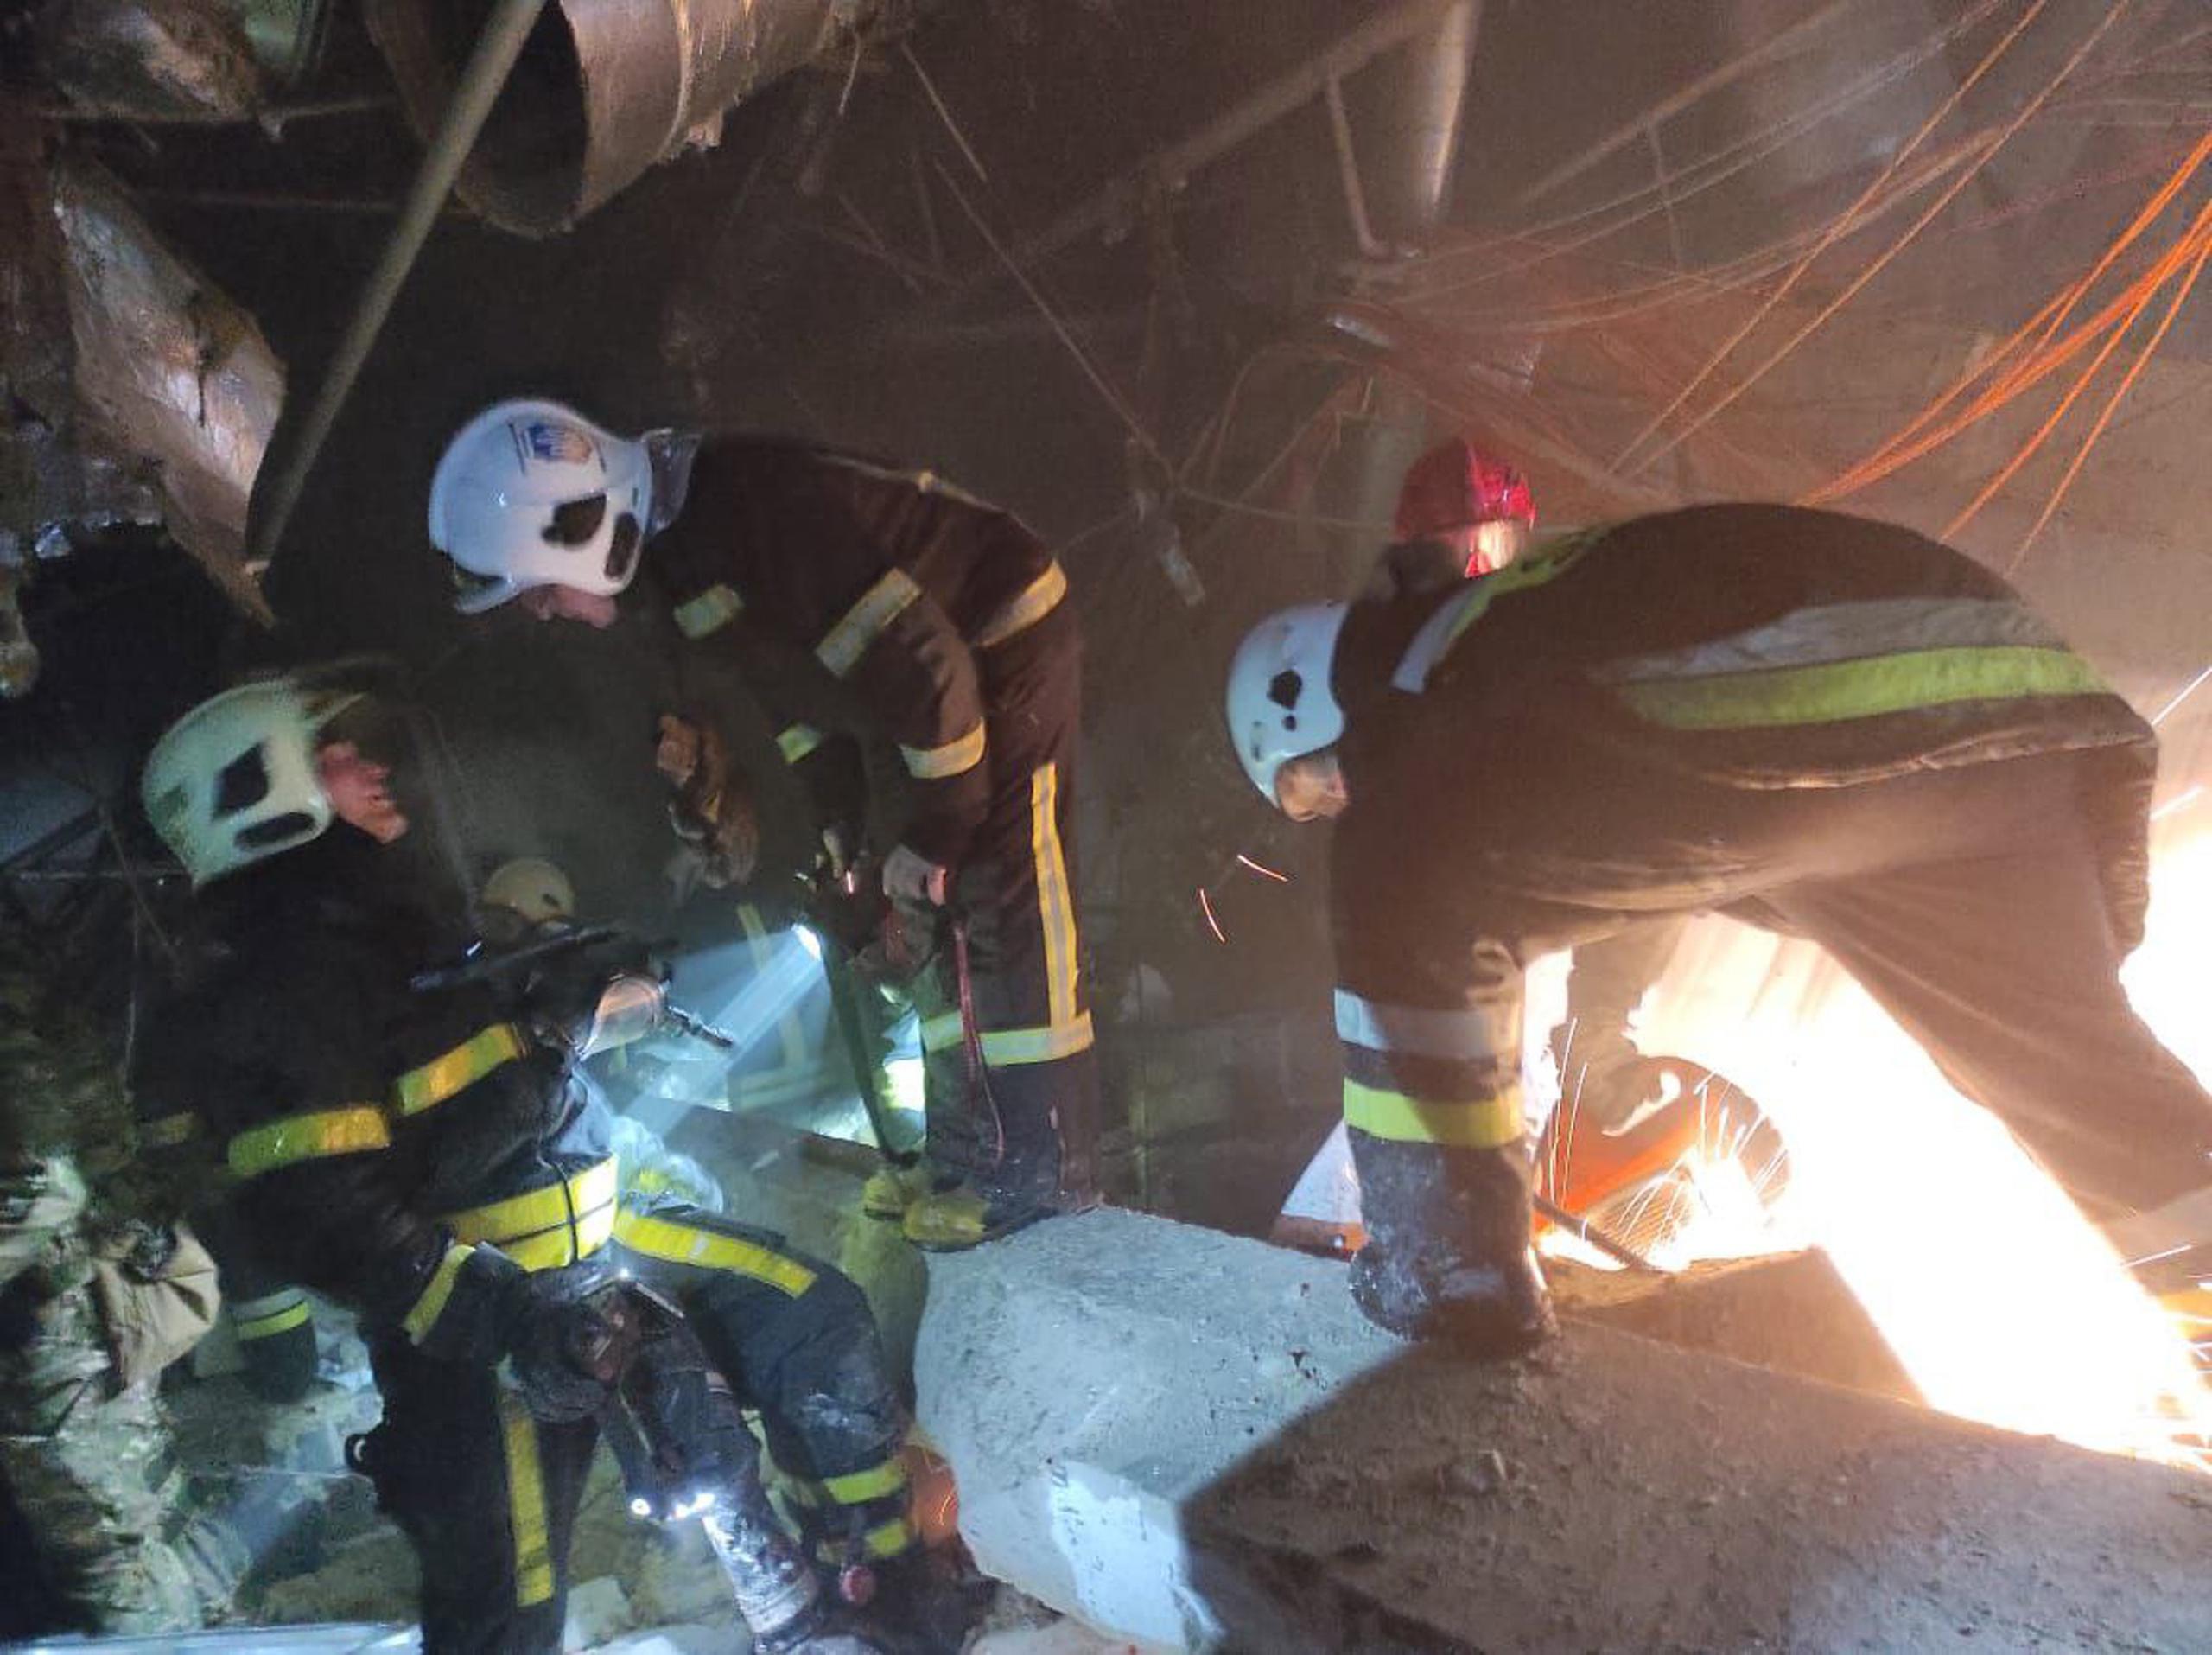 Imagen facilitada por el Servicio de Emergencias ucraniano de las labores de rescate en el centro comercial de Kiev bombardeado esta pasada noche. EFE/EPA/STATE EMERGENCY SERVICE OF UKRAINE HANDOUT
